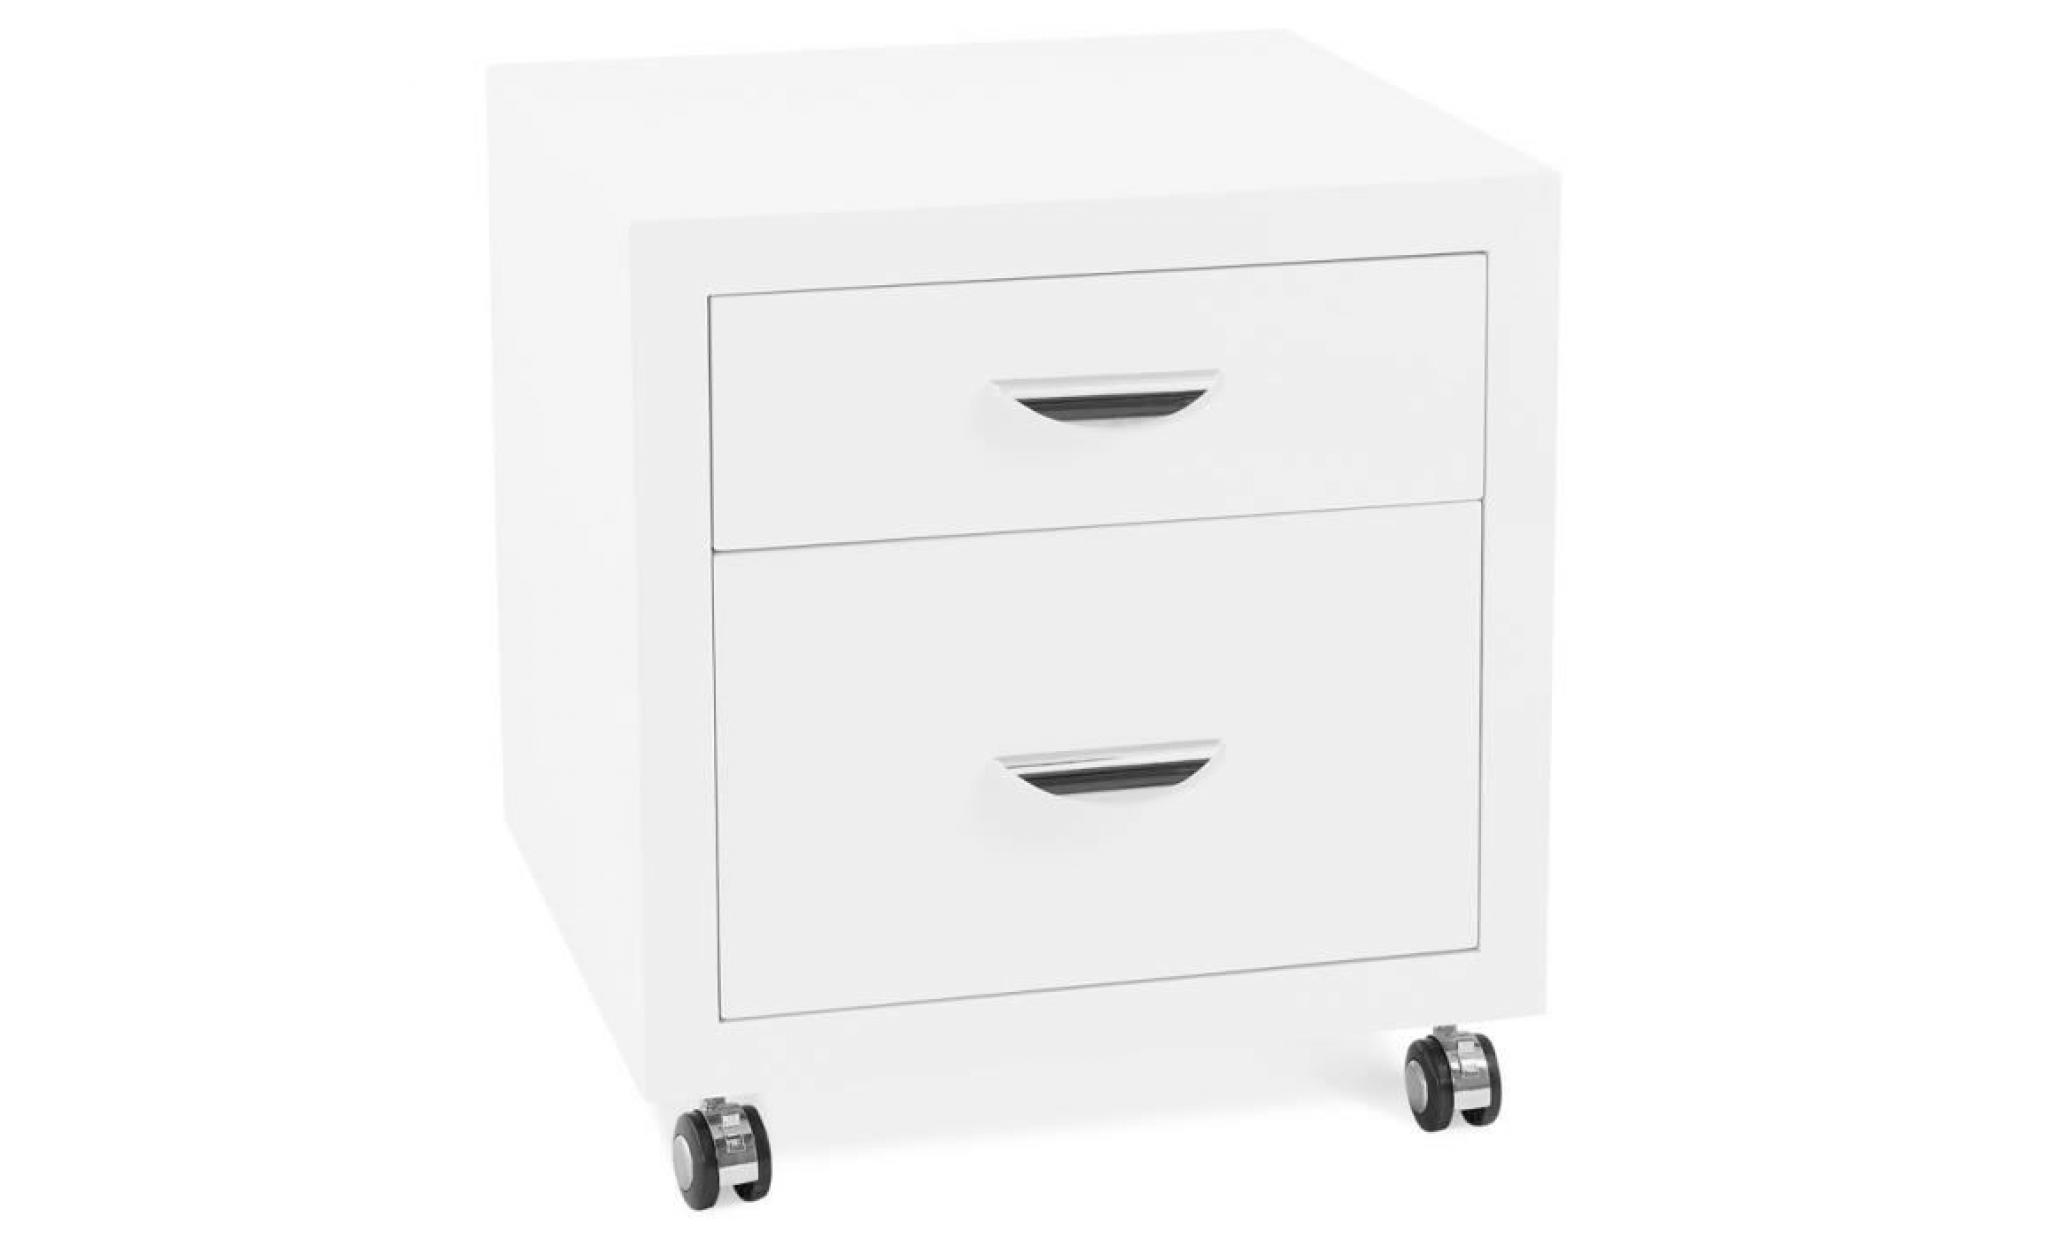 caisson de rangement olfus' blanc À tiroirs pour bureau dimensions 3d : 50x50x53 cm. caisson de bureau en bois avec 2 tiroirs.